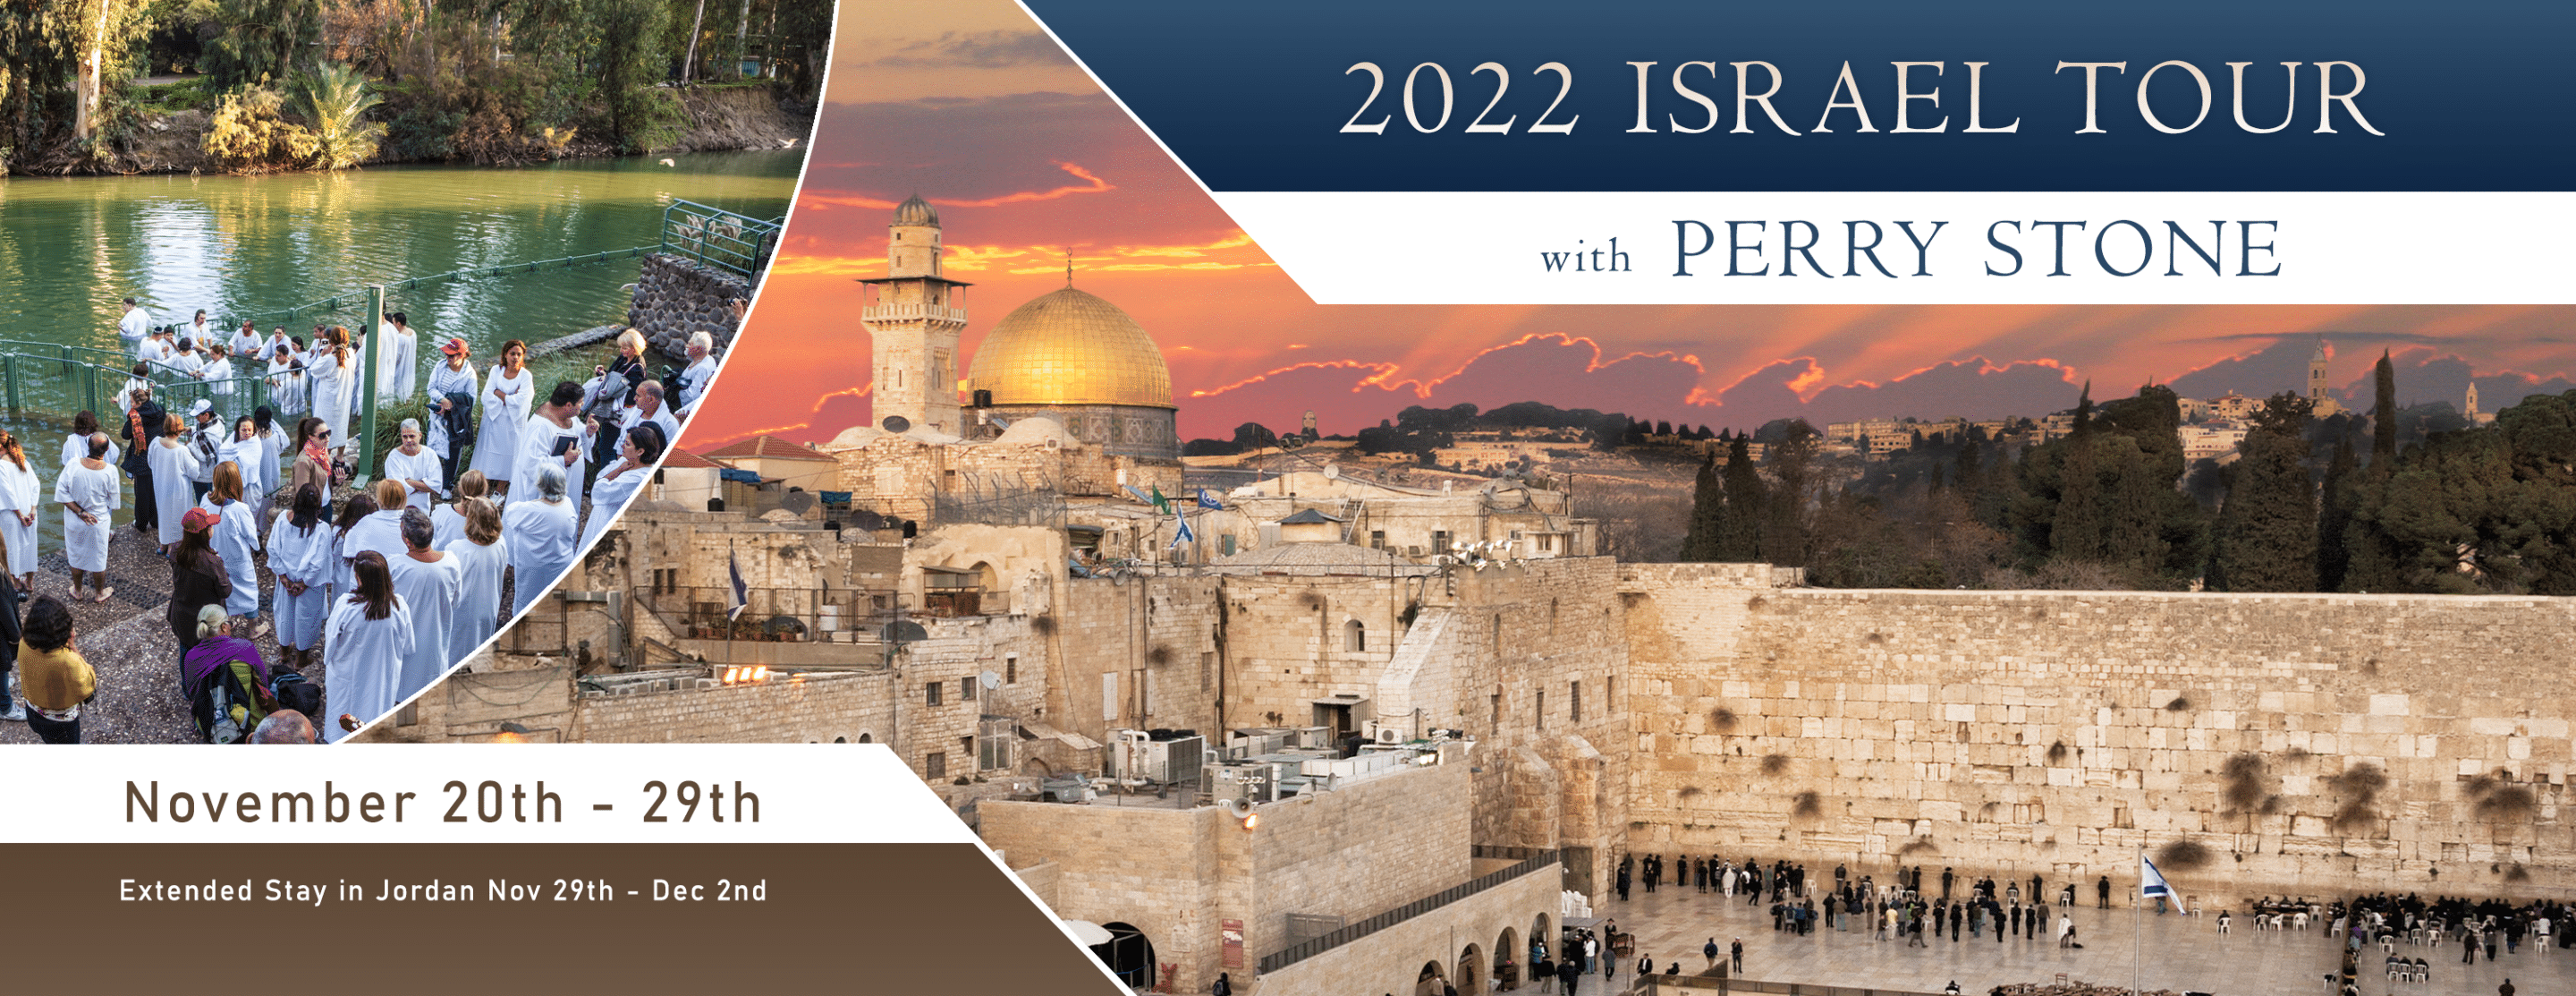 2022 Israel Website Header